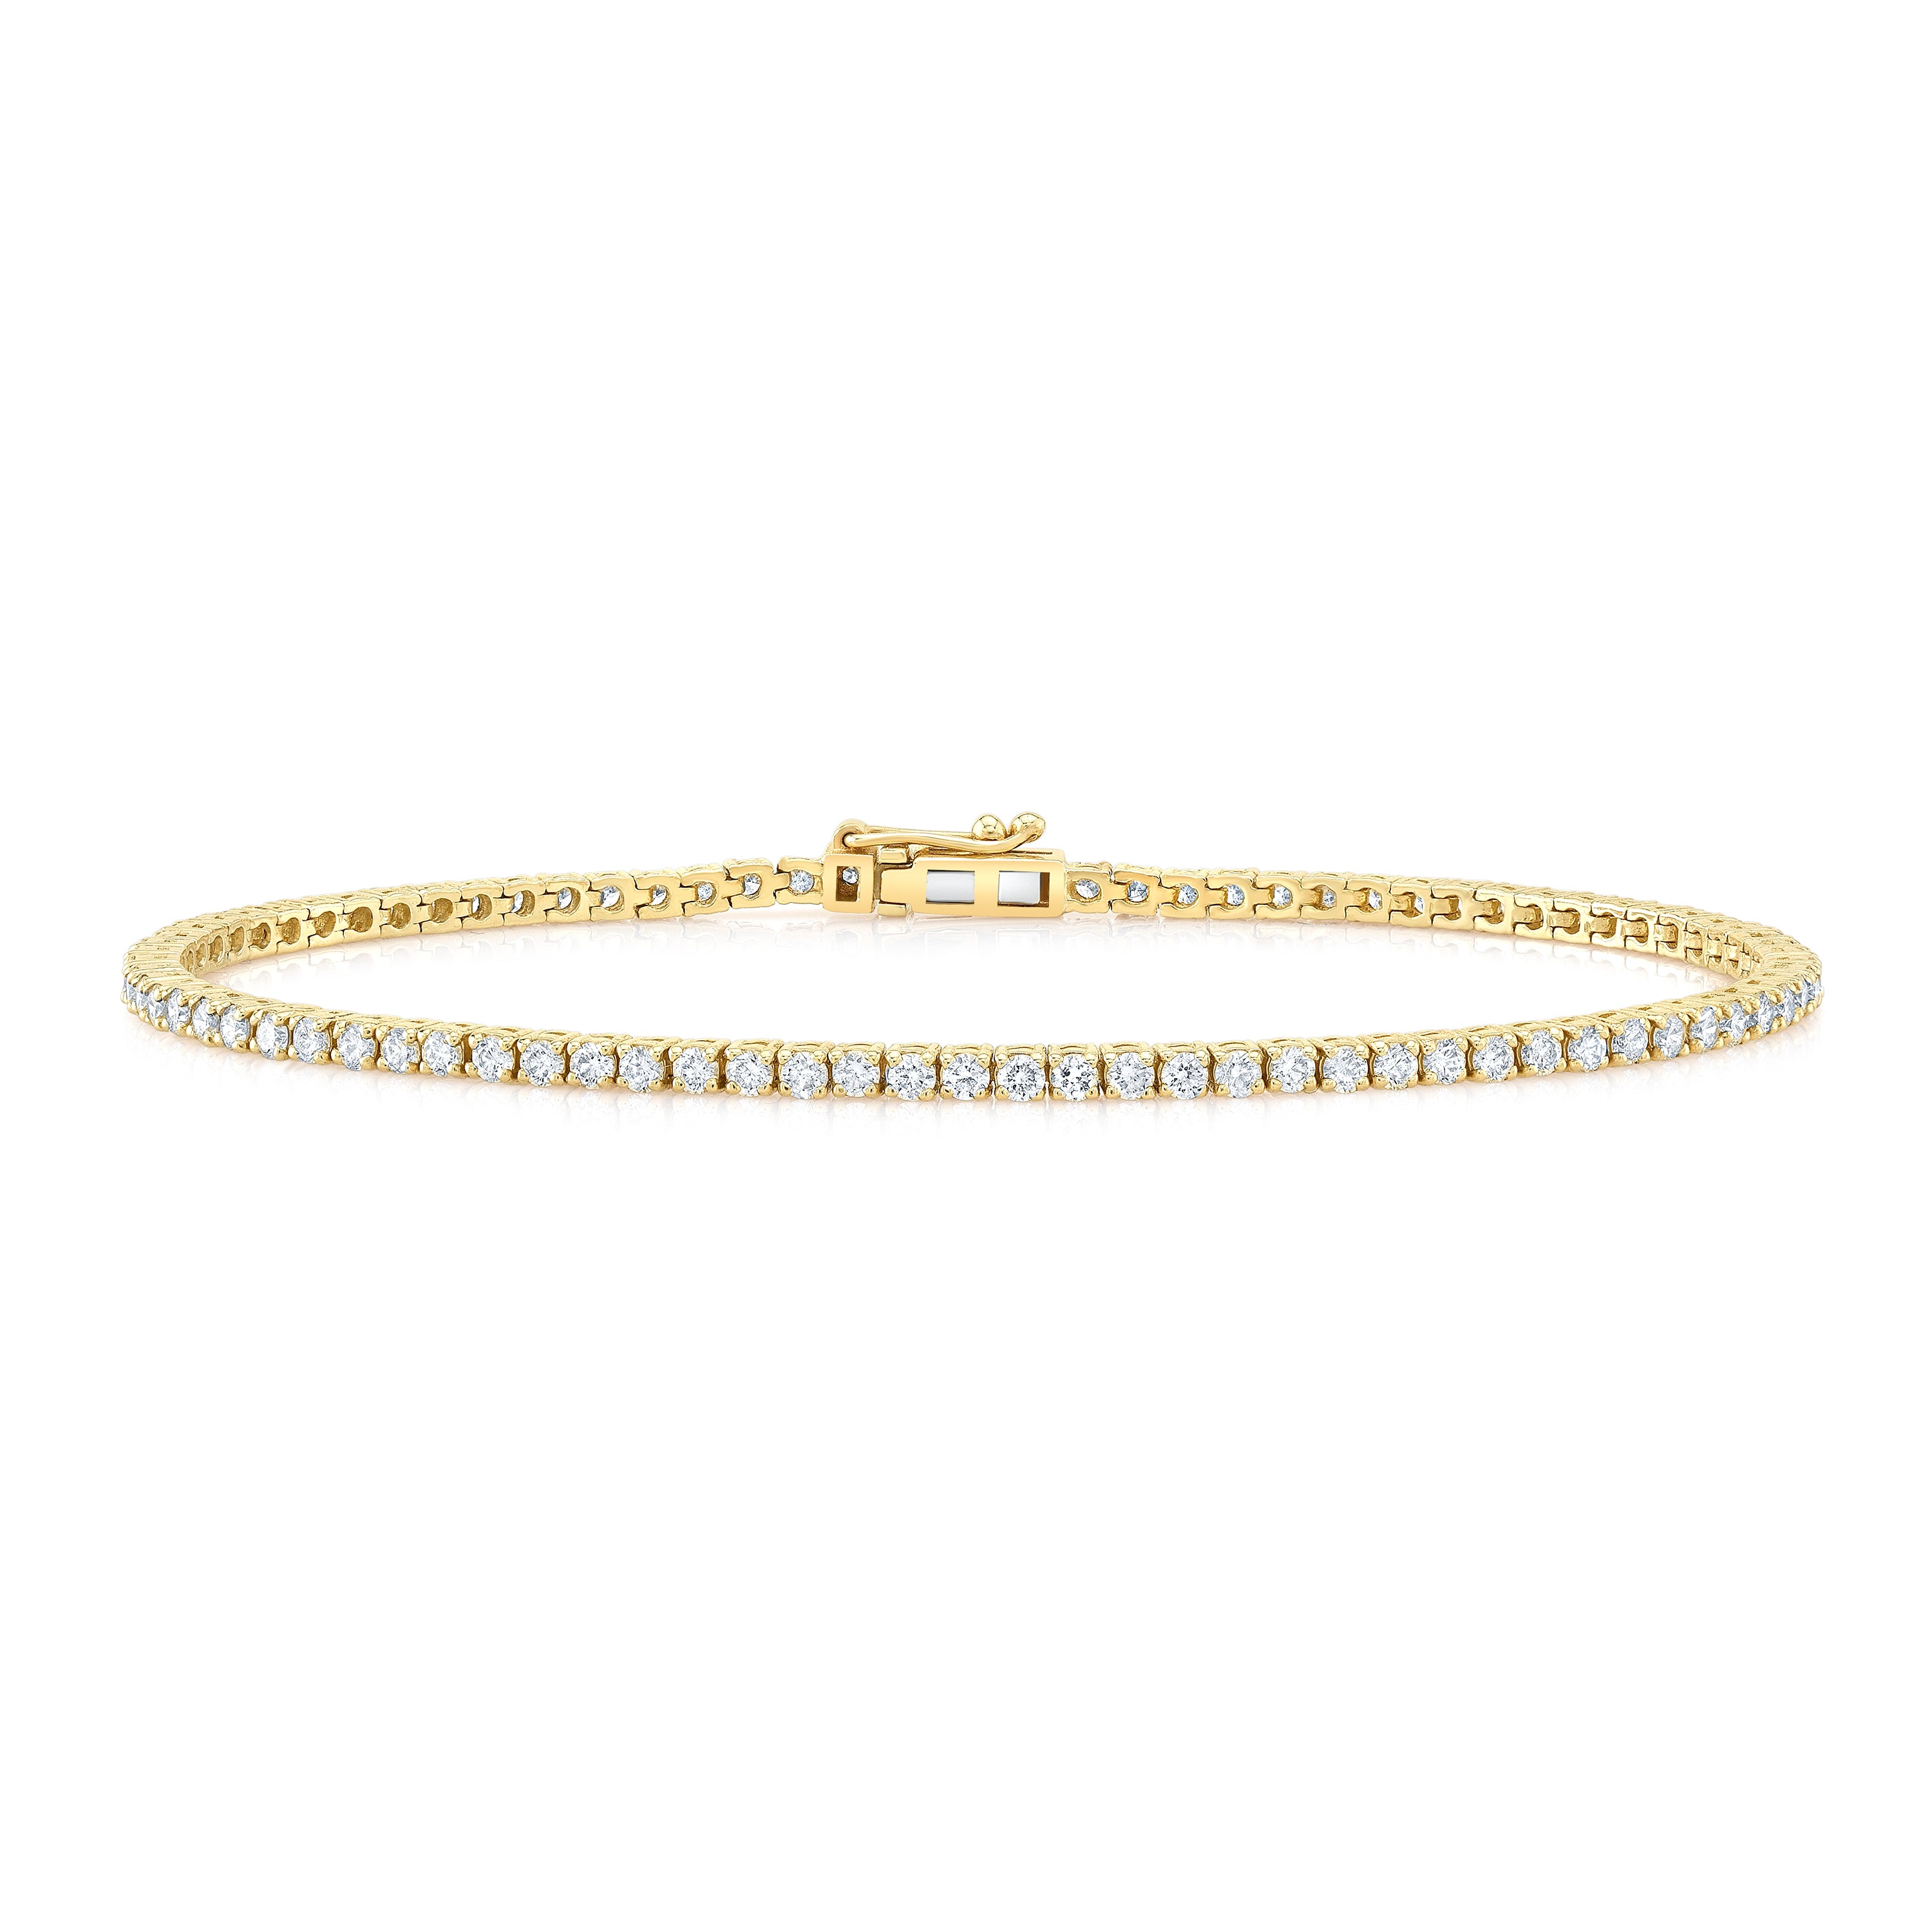 14ky gold diamond tennis bracelet. Shop luxury fine jewelry with Carter Eve Jewelry. 